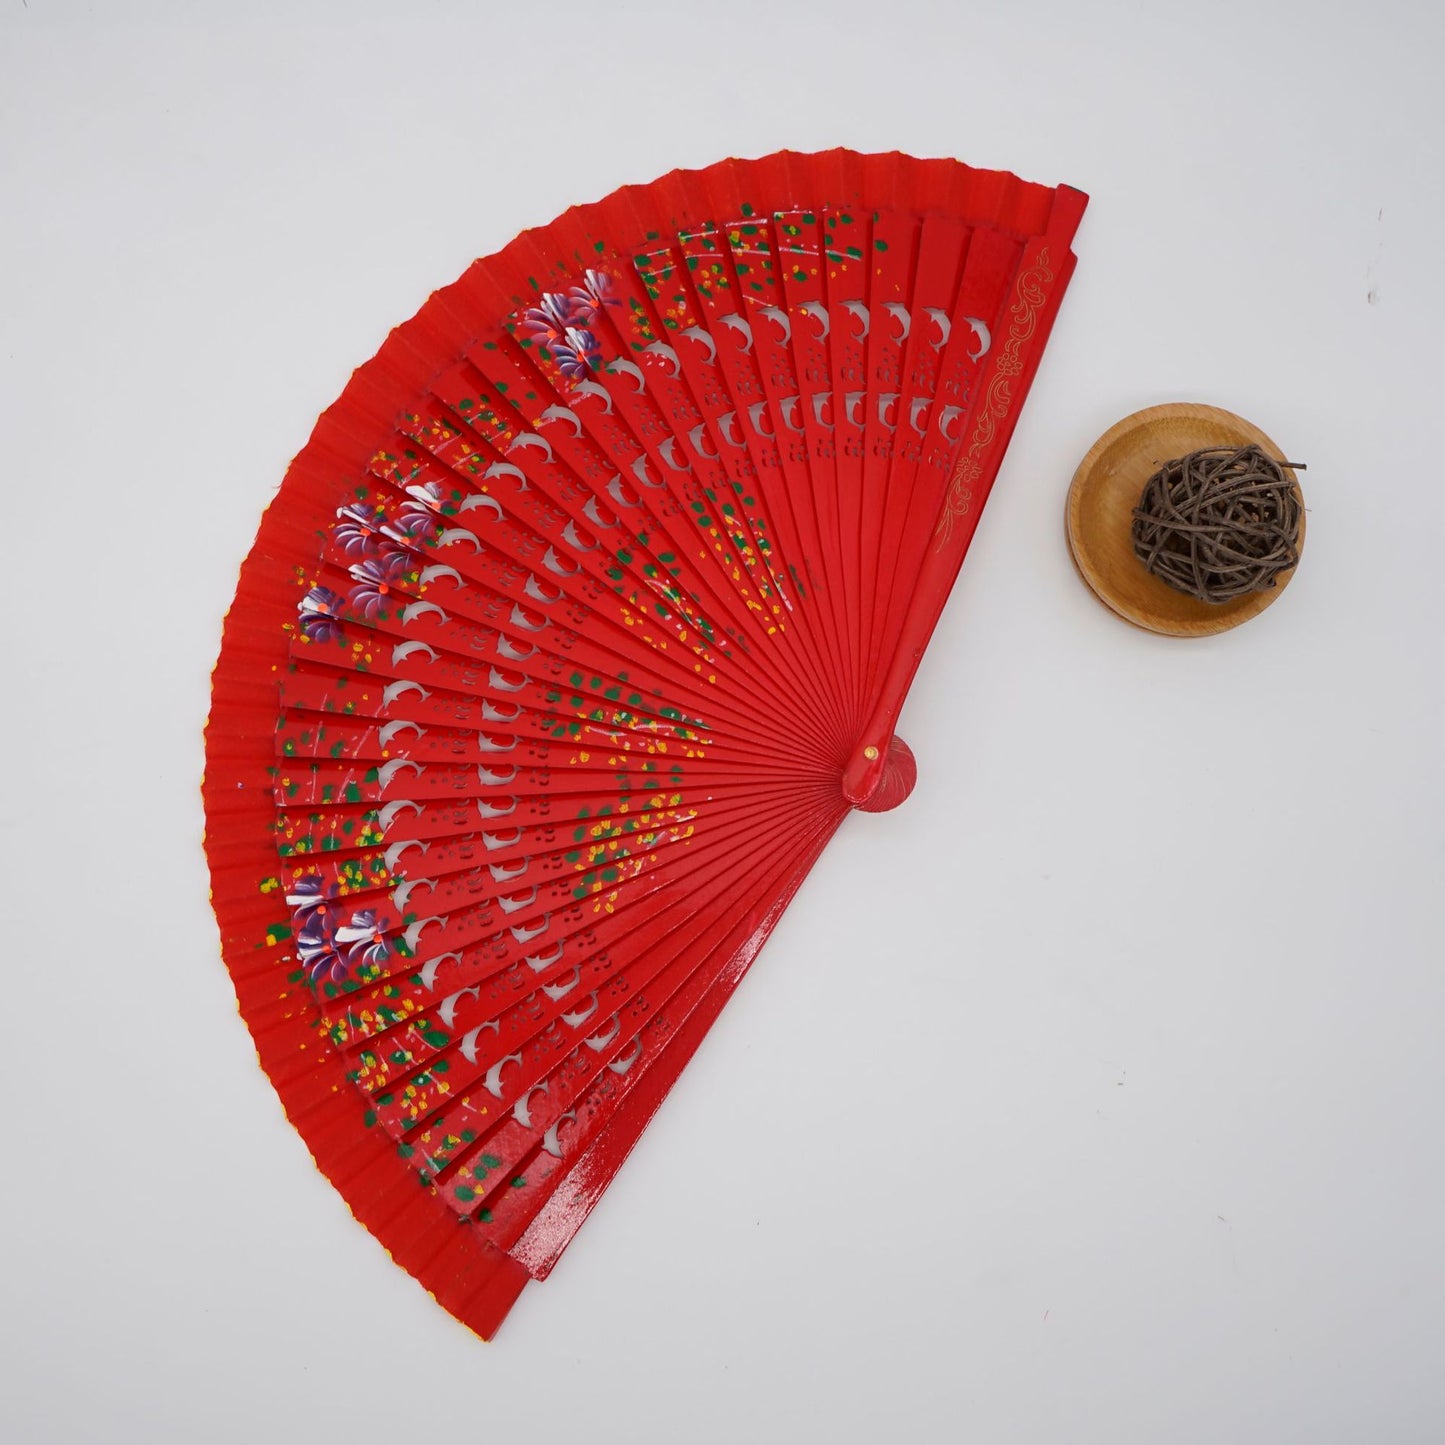 TEEK - Folding Fan Wood Spanish Style Fan FAN theteekdotcom Red  